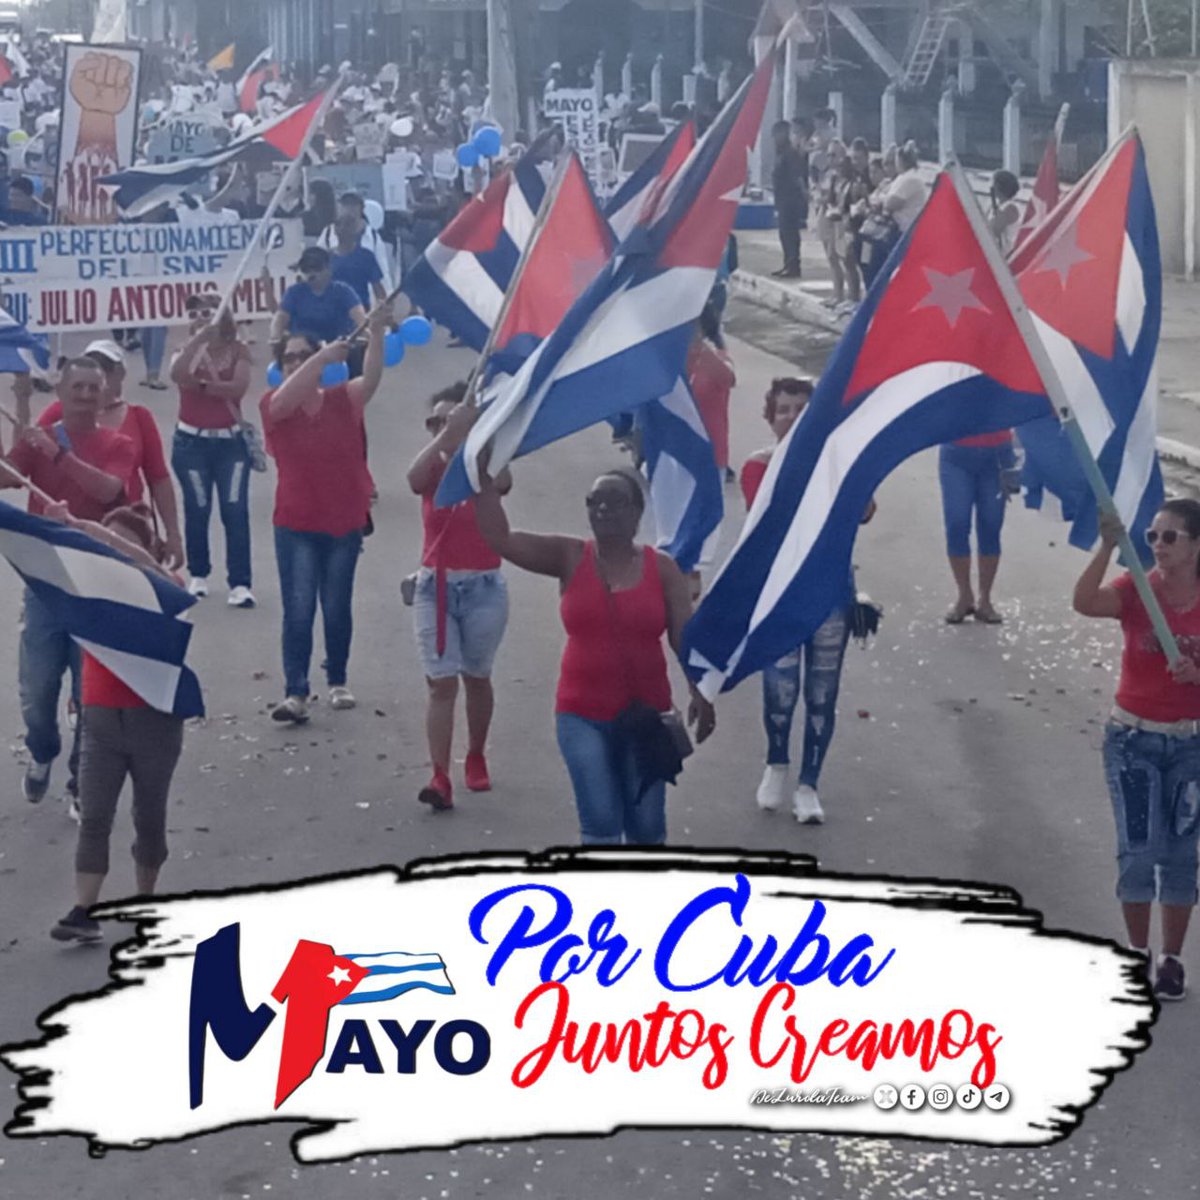 @CubaNoEsMiami @DeZurdaTeam_ Nuevamente se calentó La Habana... A los cubanos nos sobran los motivos para celebrar cada #1Mayo. Hoy #PorCubaJuntosCreamos 🇨🇺.
#DeZurdaTeam